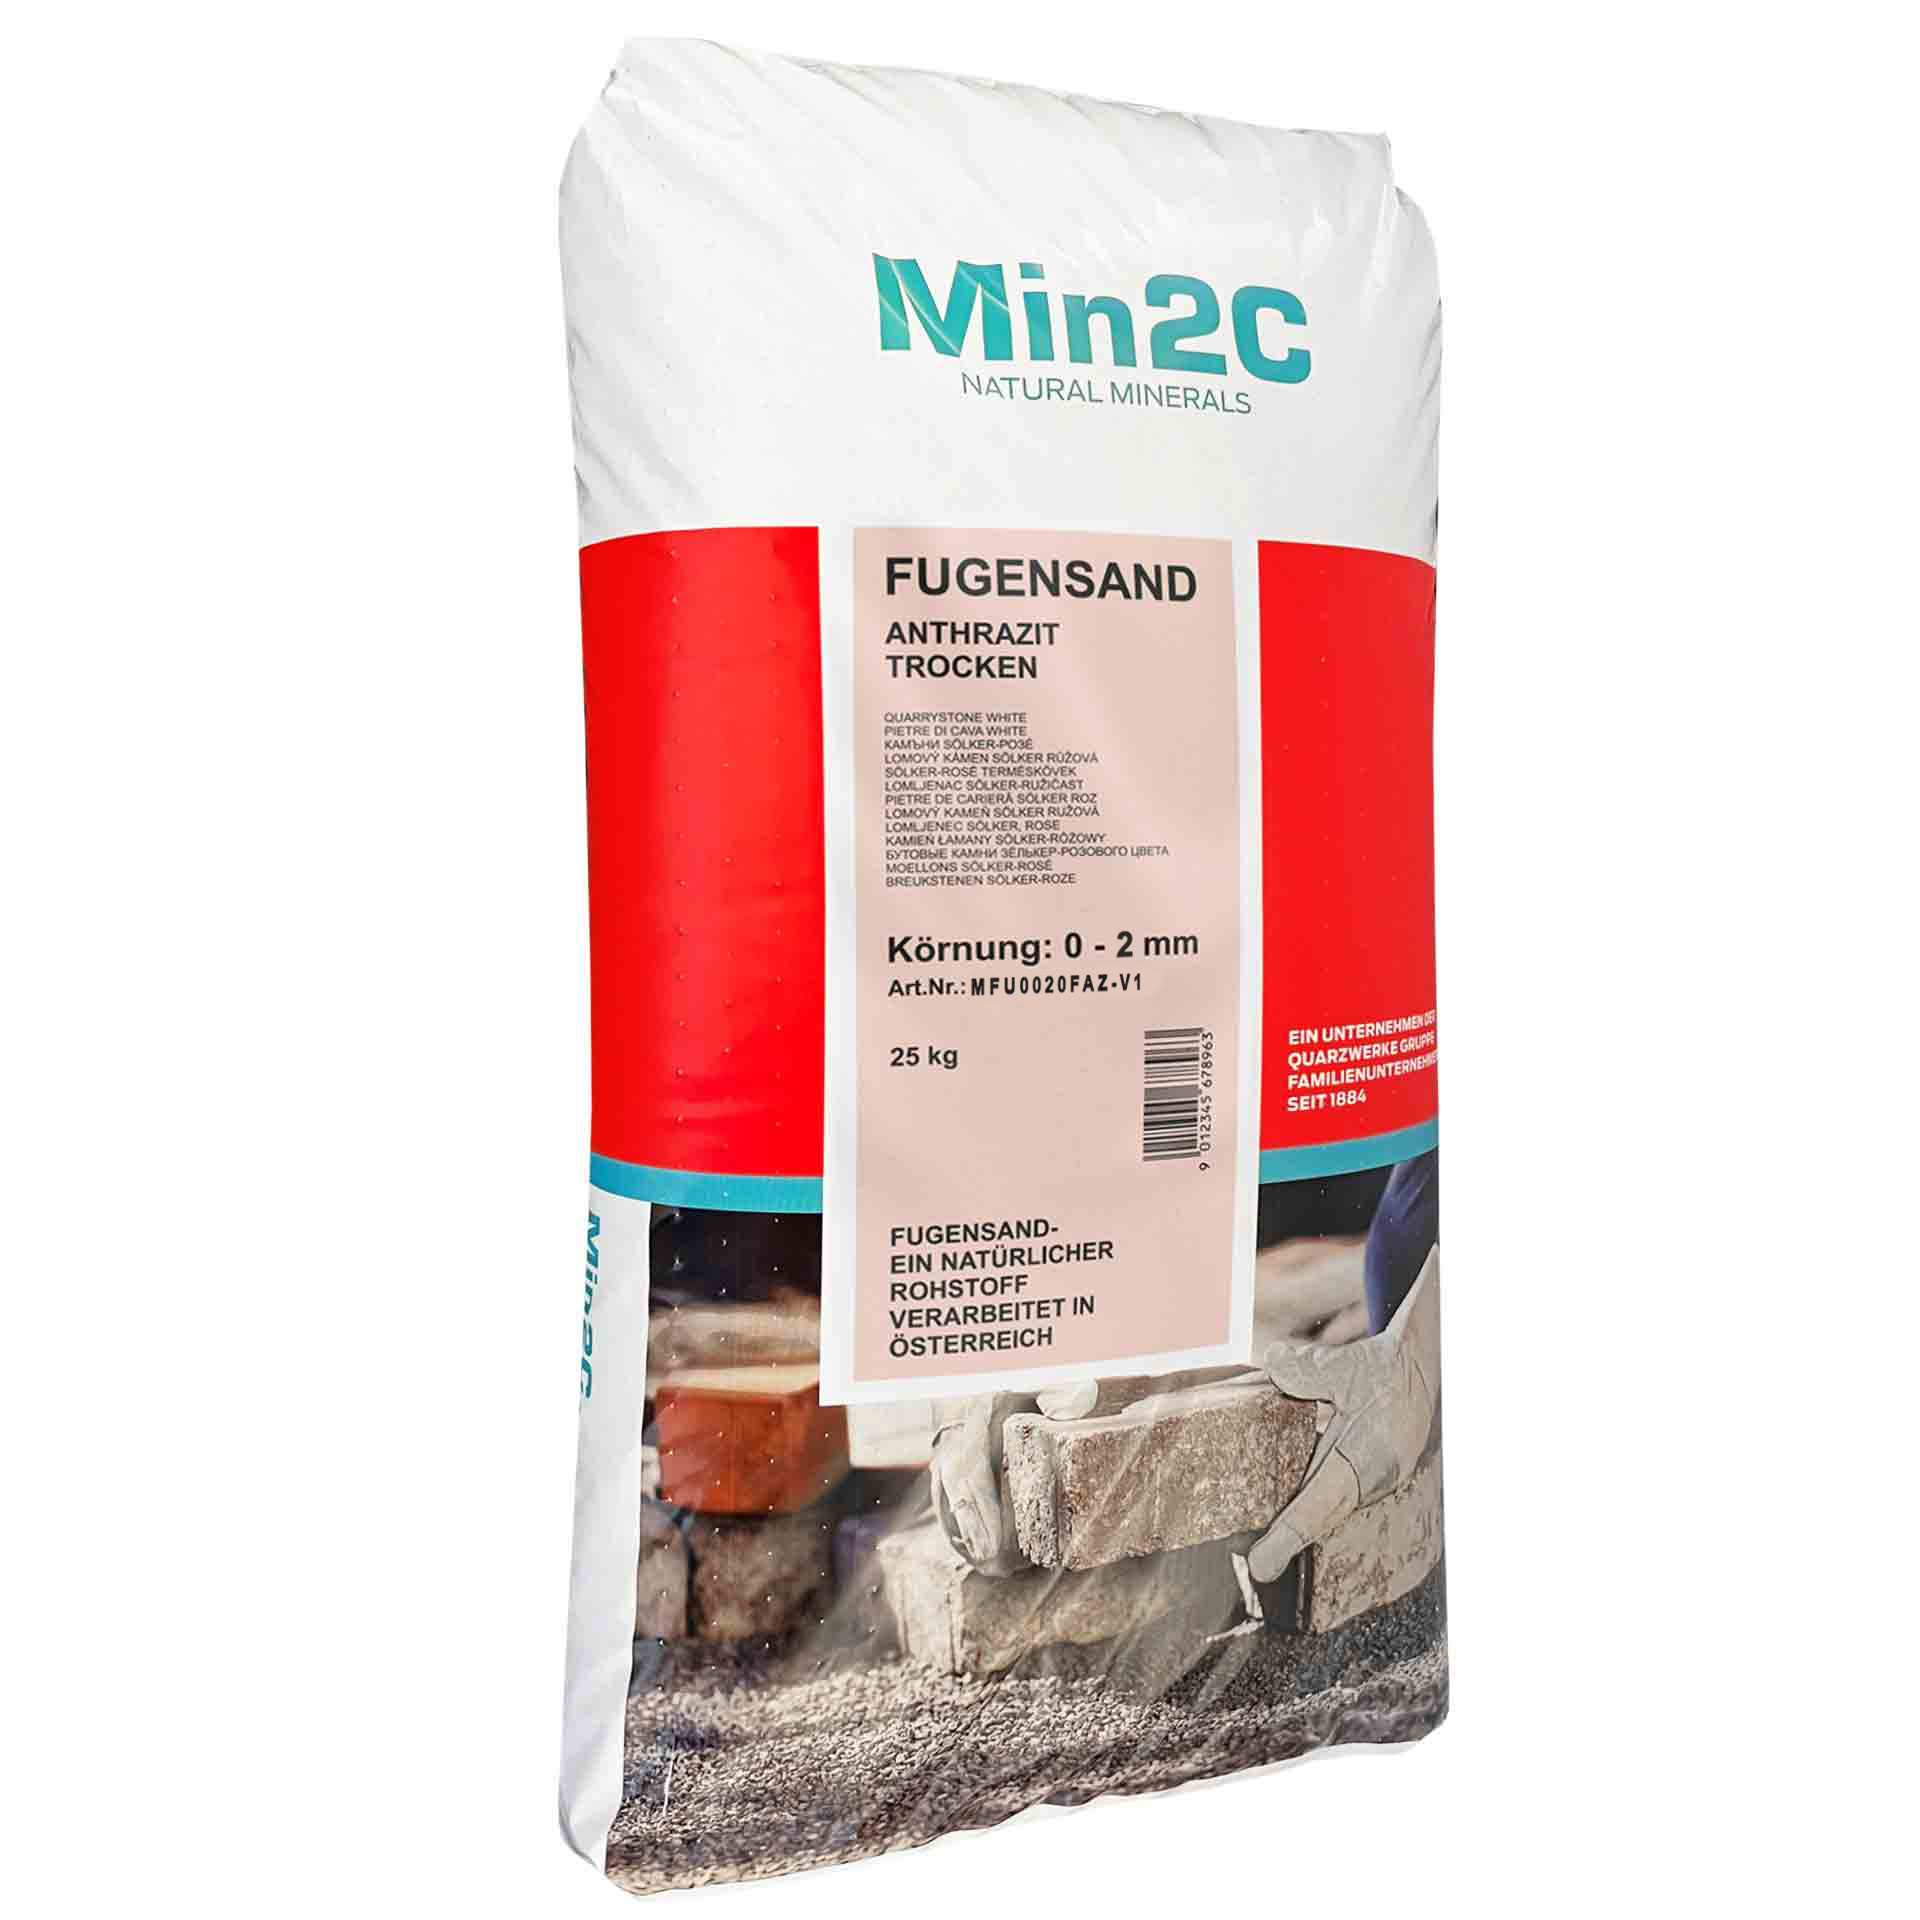 Min2C 25 kg Fugensand anthrazit 0.0-2.0 mm Premium Quarzsand